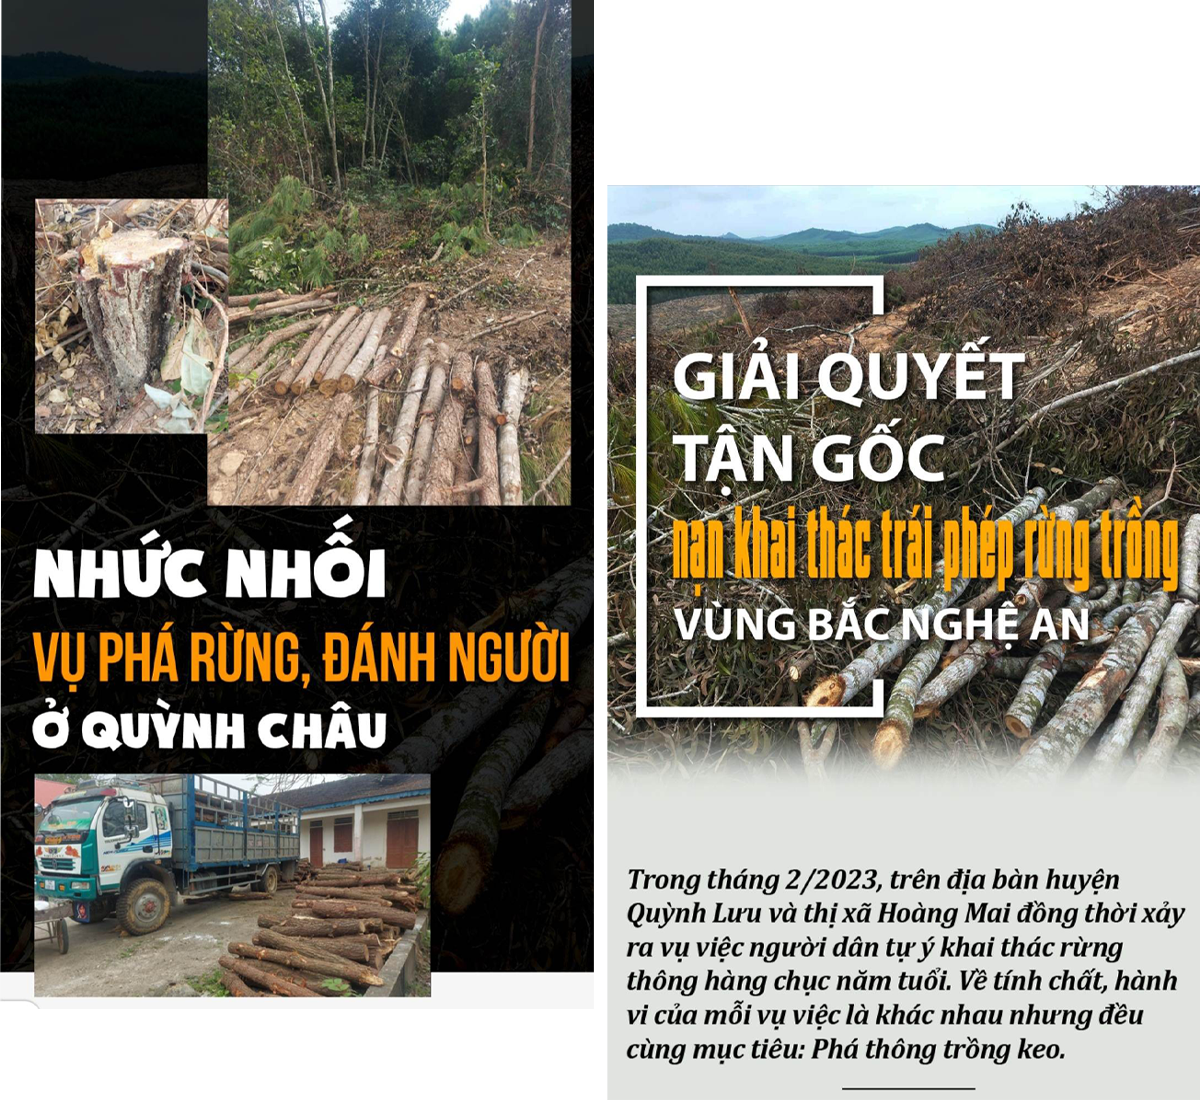 Bìa các bài viết “Nhức nhối vụ phá rừng, đánh người ở Quỳnh Châu”; “Giải quyết tận gốc nạn khai thác trái phép rừng trồng vùng Bắc Nghệ An”.